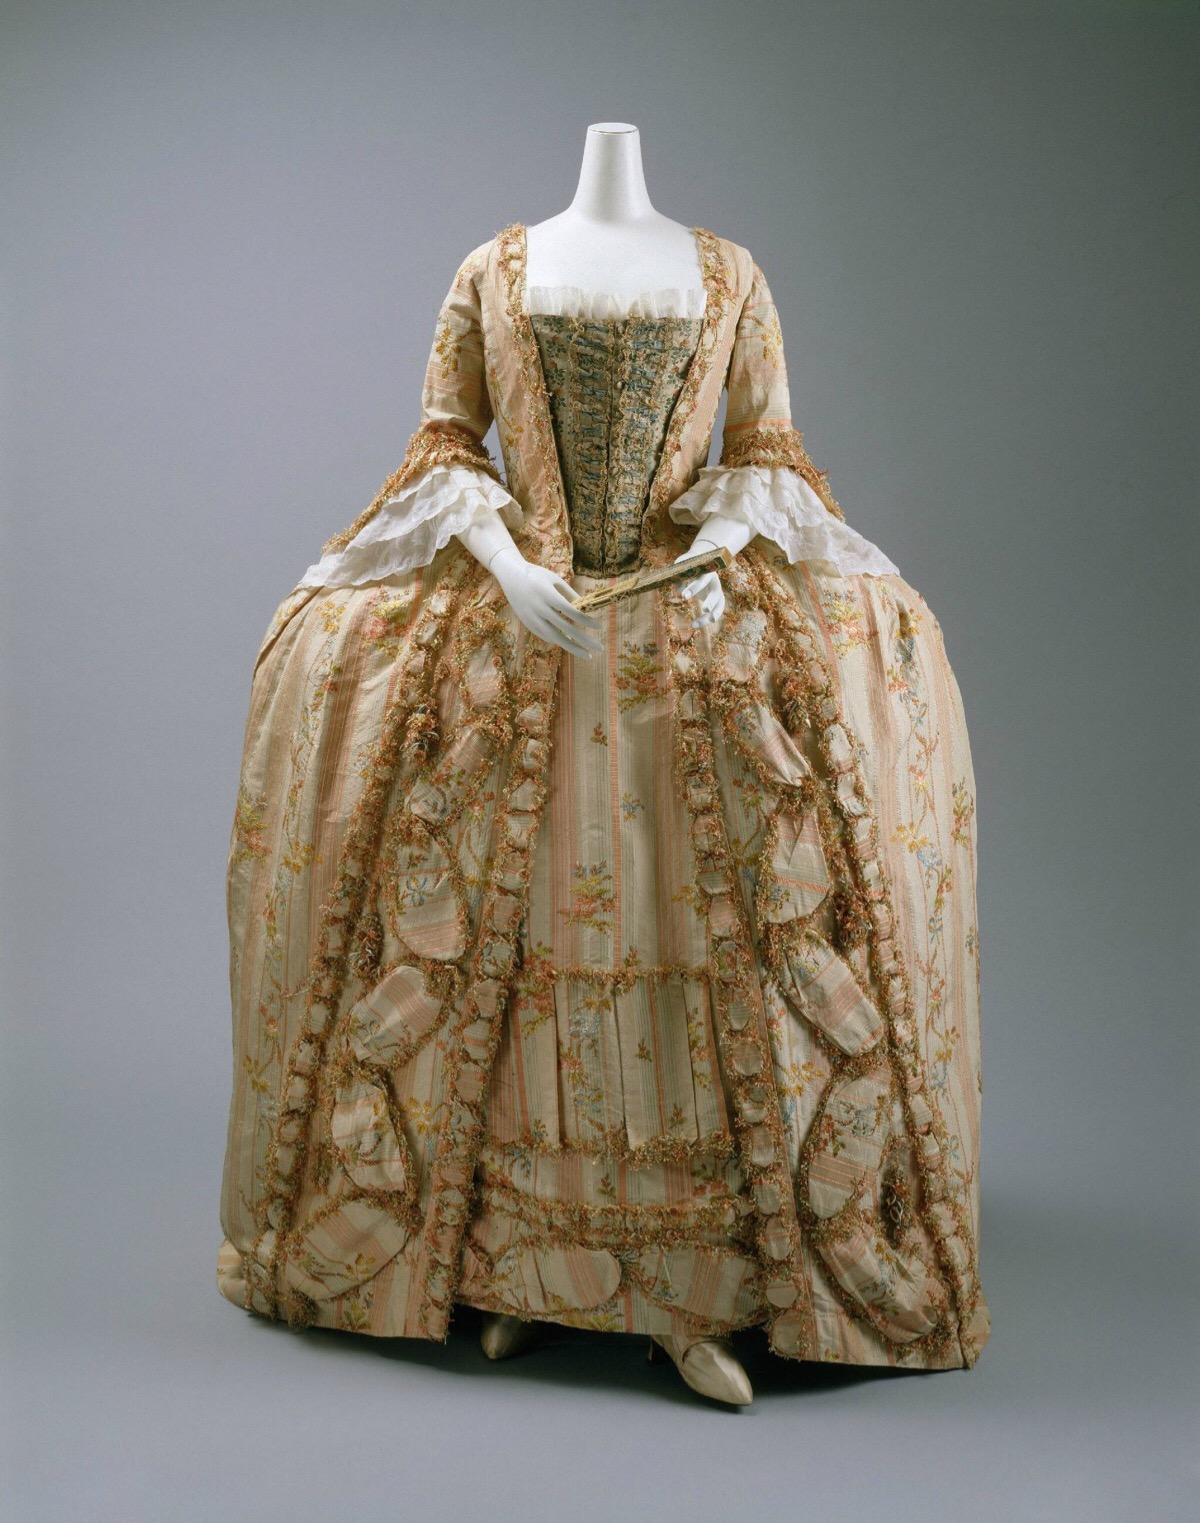 法式女袍,1775~1780年,法国,浅红与白色相间条纹丝